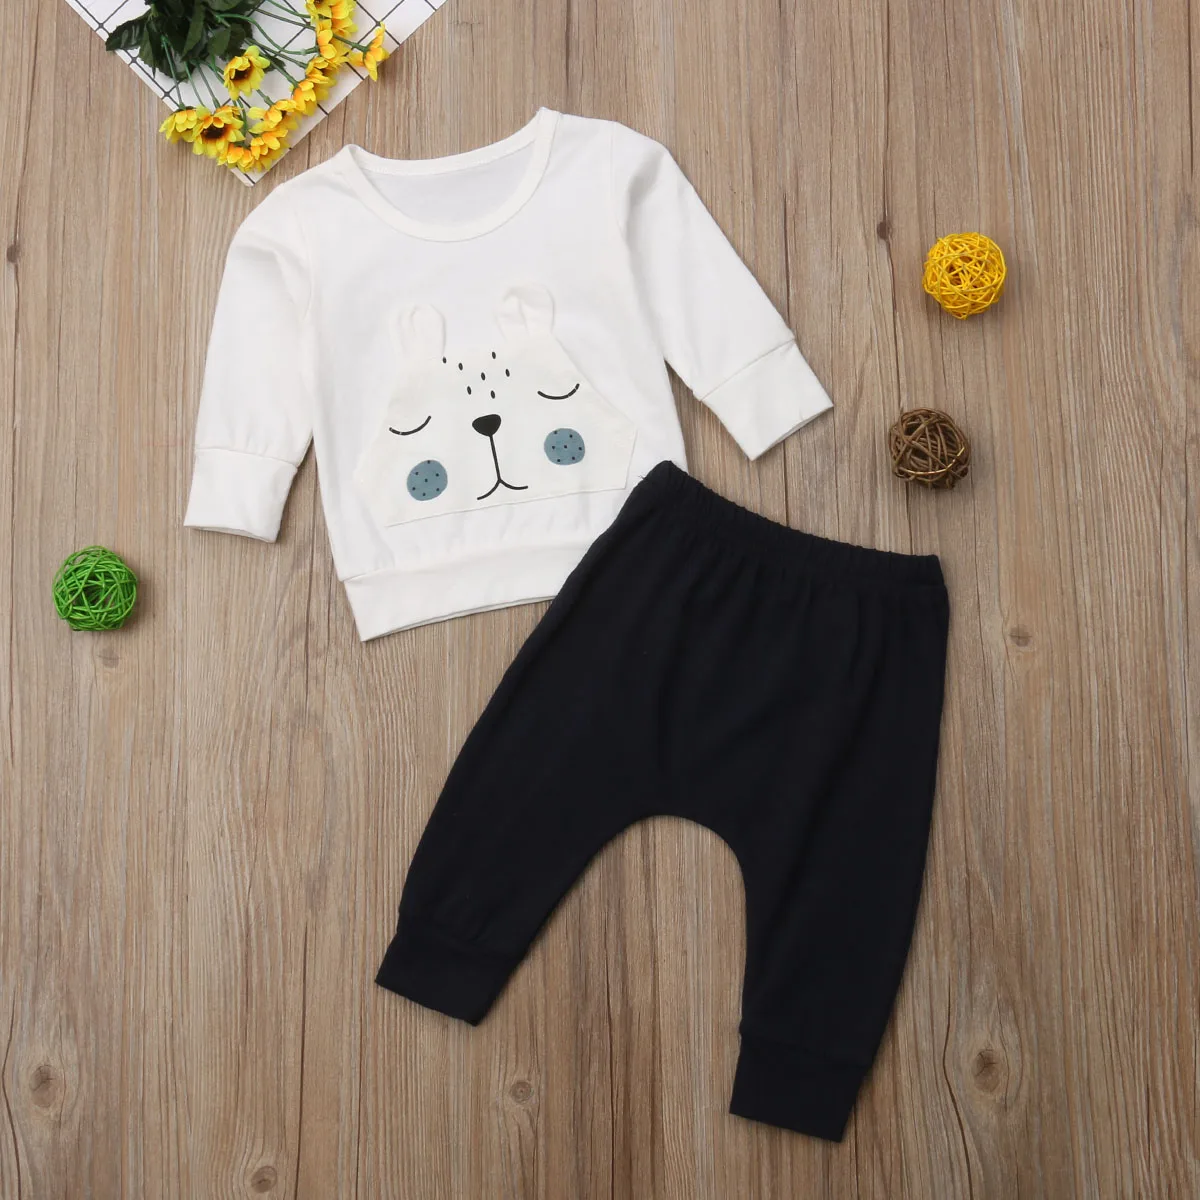 Pudcoco/Новейшая модная одежда для новорожденных мальчиков и девочек; хлопковые топы с объемным рисунком медведя; длинные штаны; комплект одежды из 2 предметов